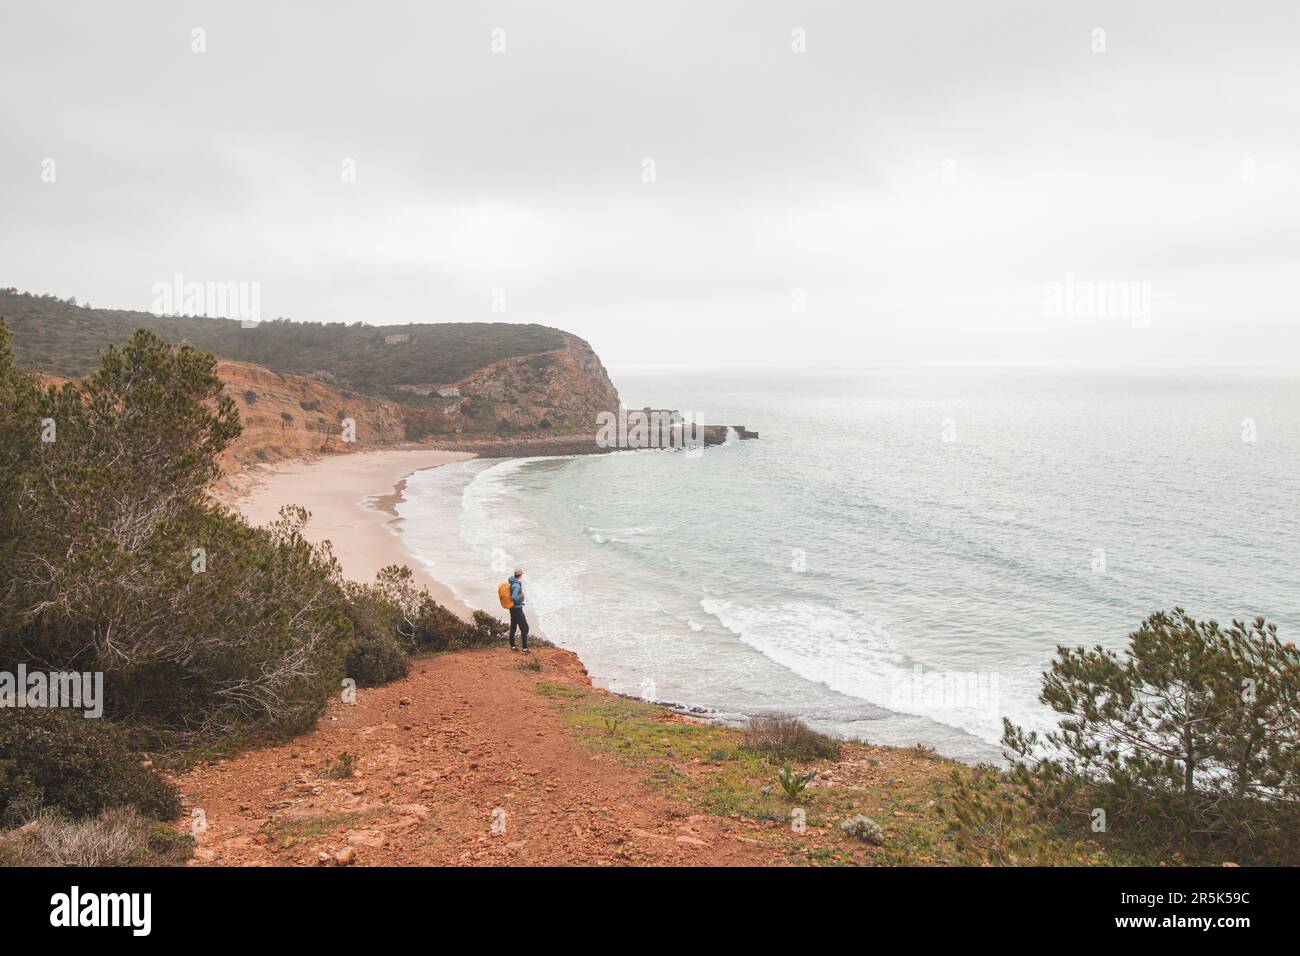 Wanderer stehen am Rand einer Klippe und beobachten den Strand unter dem Namen Praia do Burgau an der Südwestküste Portugals in touristischer und berühmter Weise Stockfoto